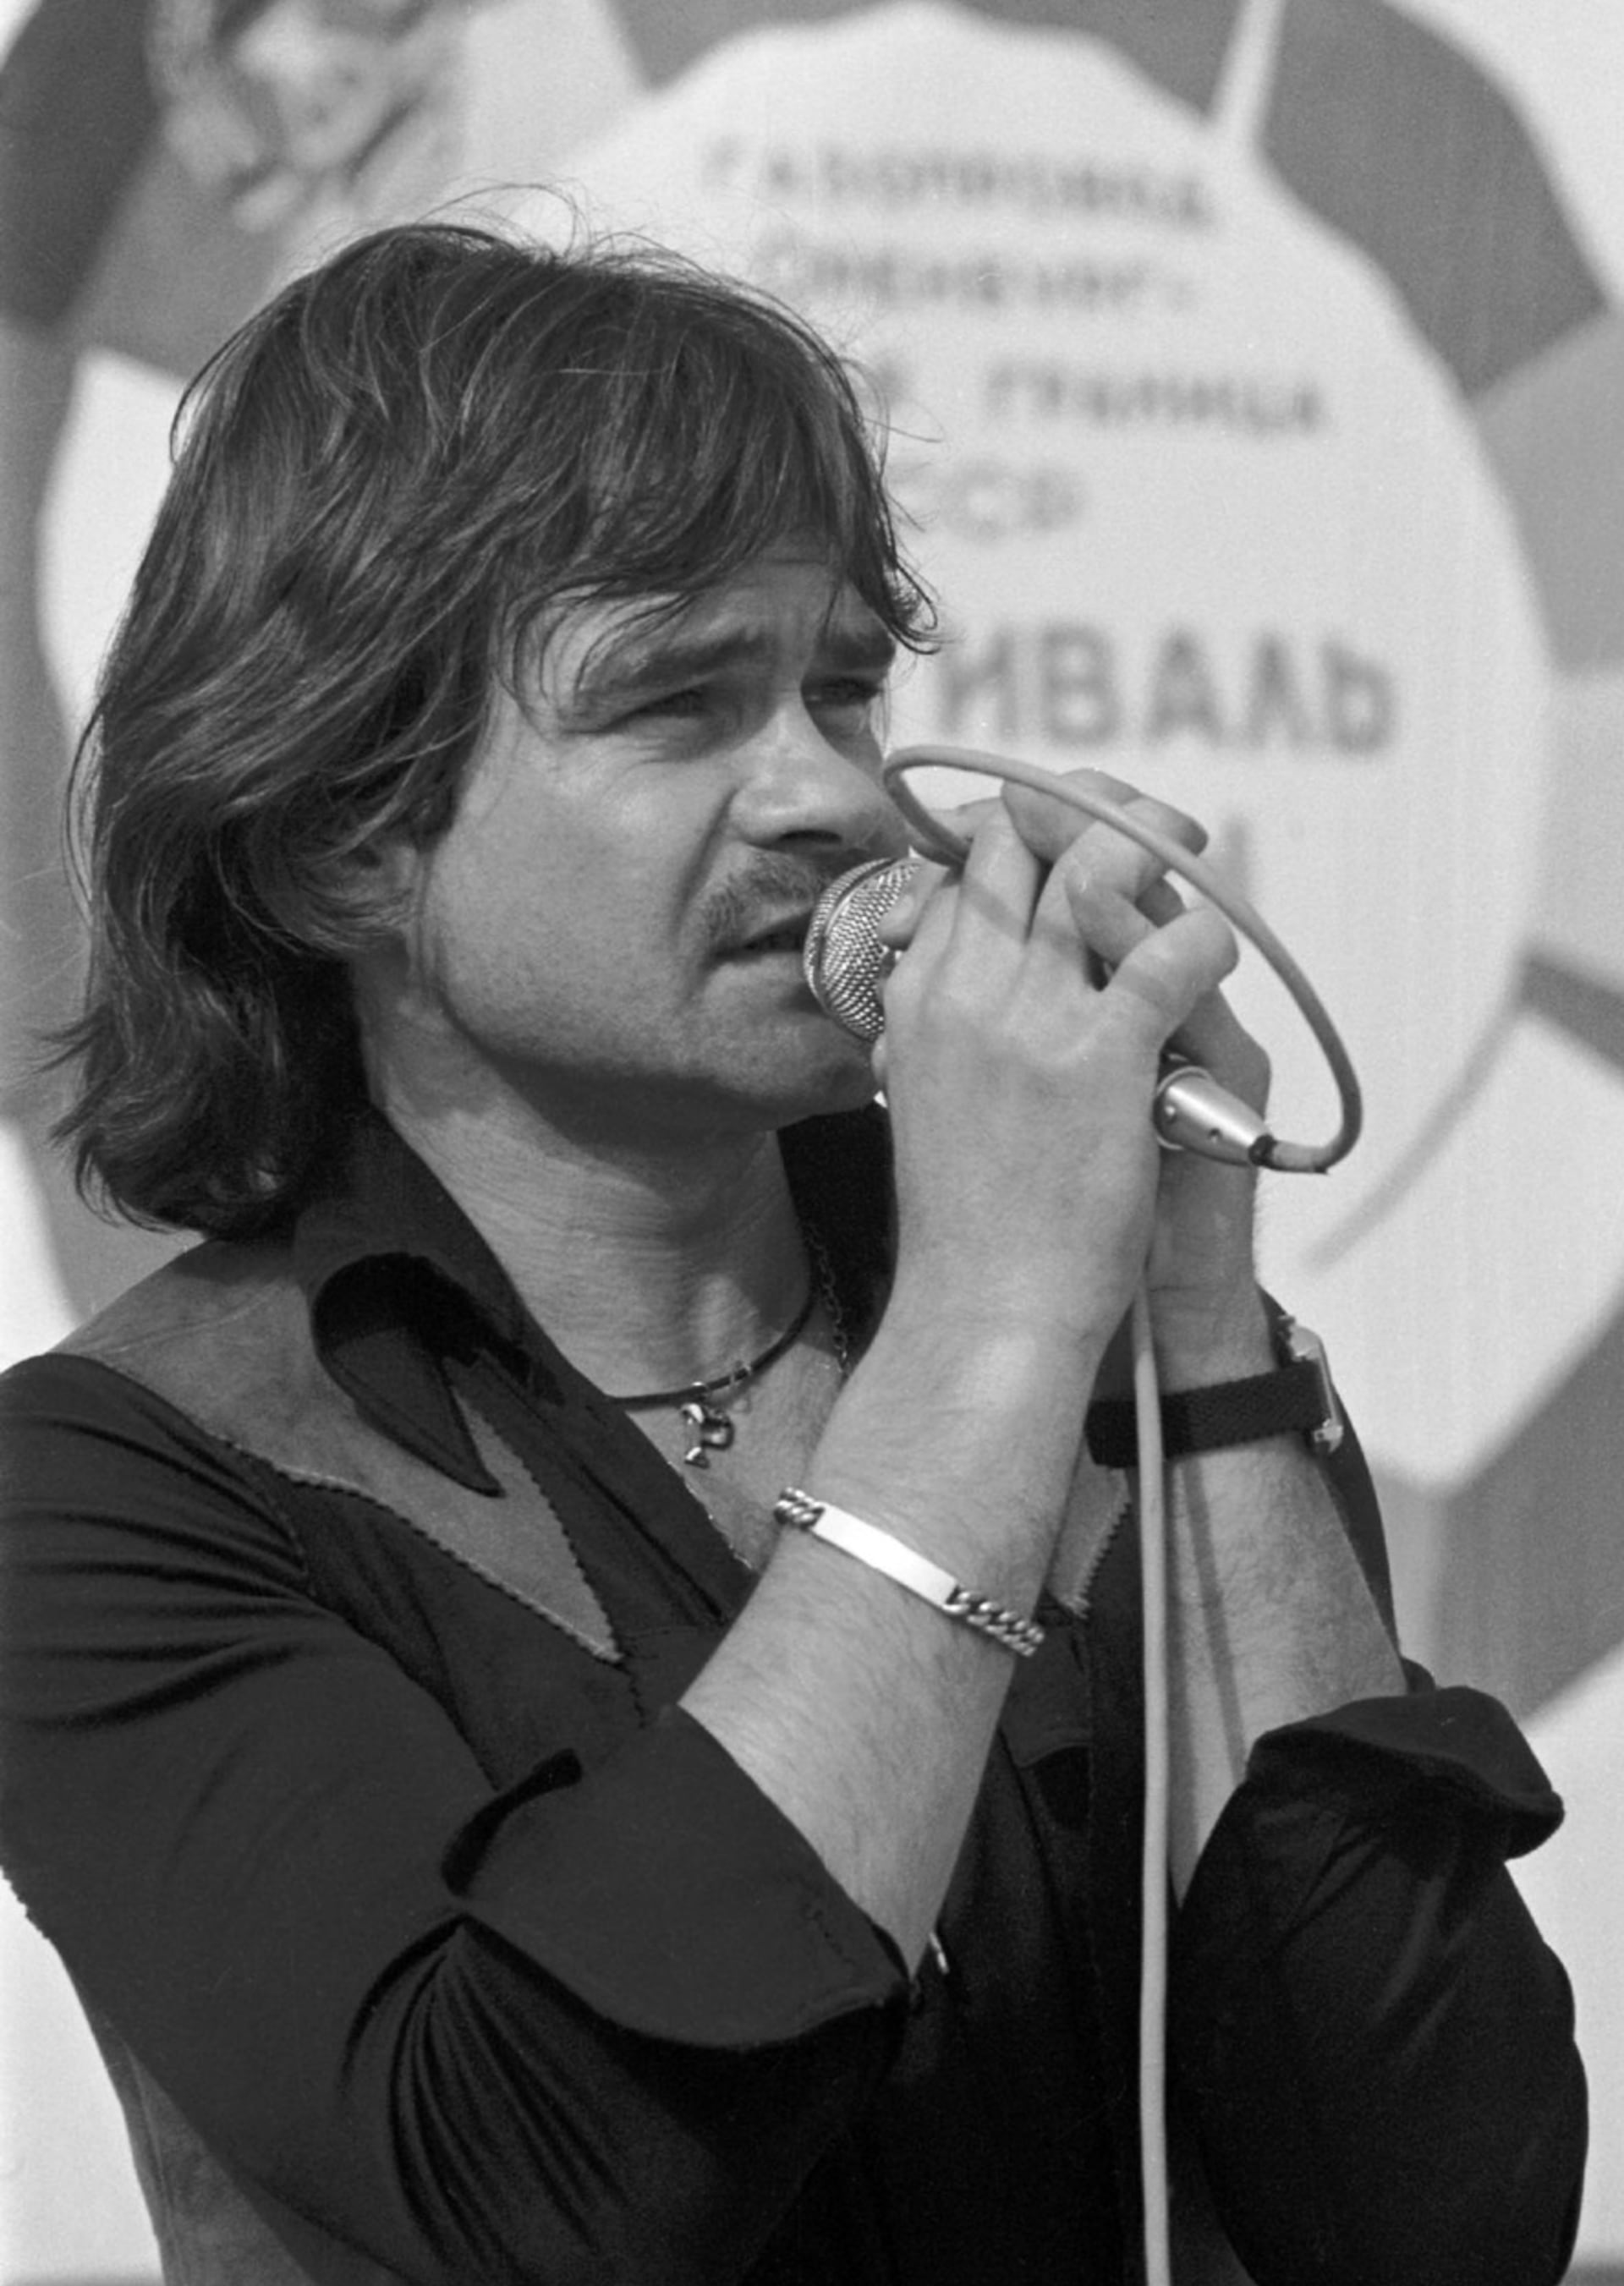 Zásadní zlom v hudební kariéře Petra Rezka nastal v roce 1976, kdy začal zpívat společně s Hanou Zagorovou v orchestru Karla Vágnera.